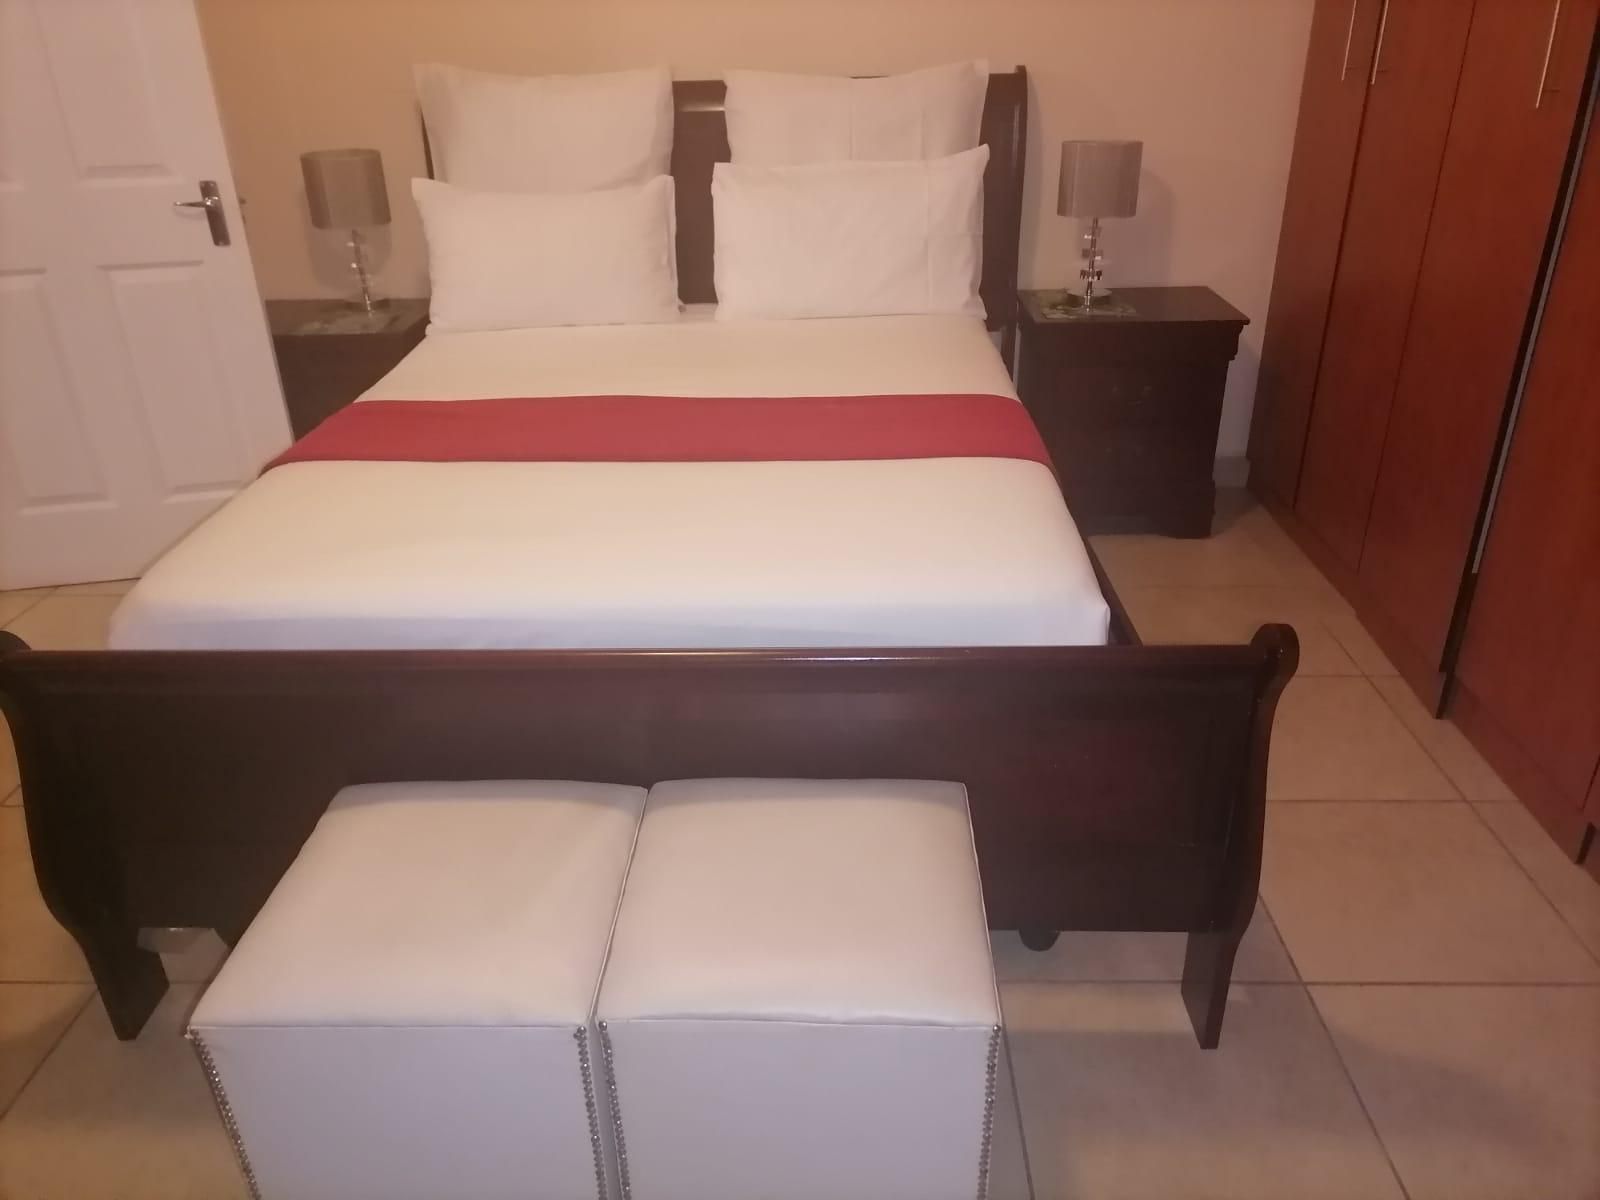 Ekhaya Lentokozo Bandb Kwa Mashu Durban Kwazulu Natal South Africa Bedroom